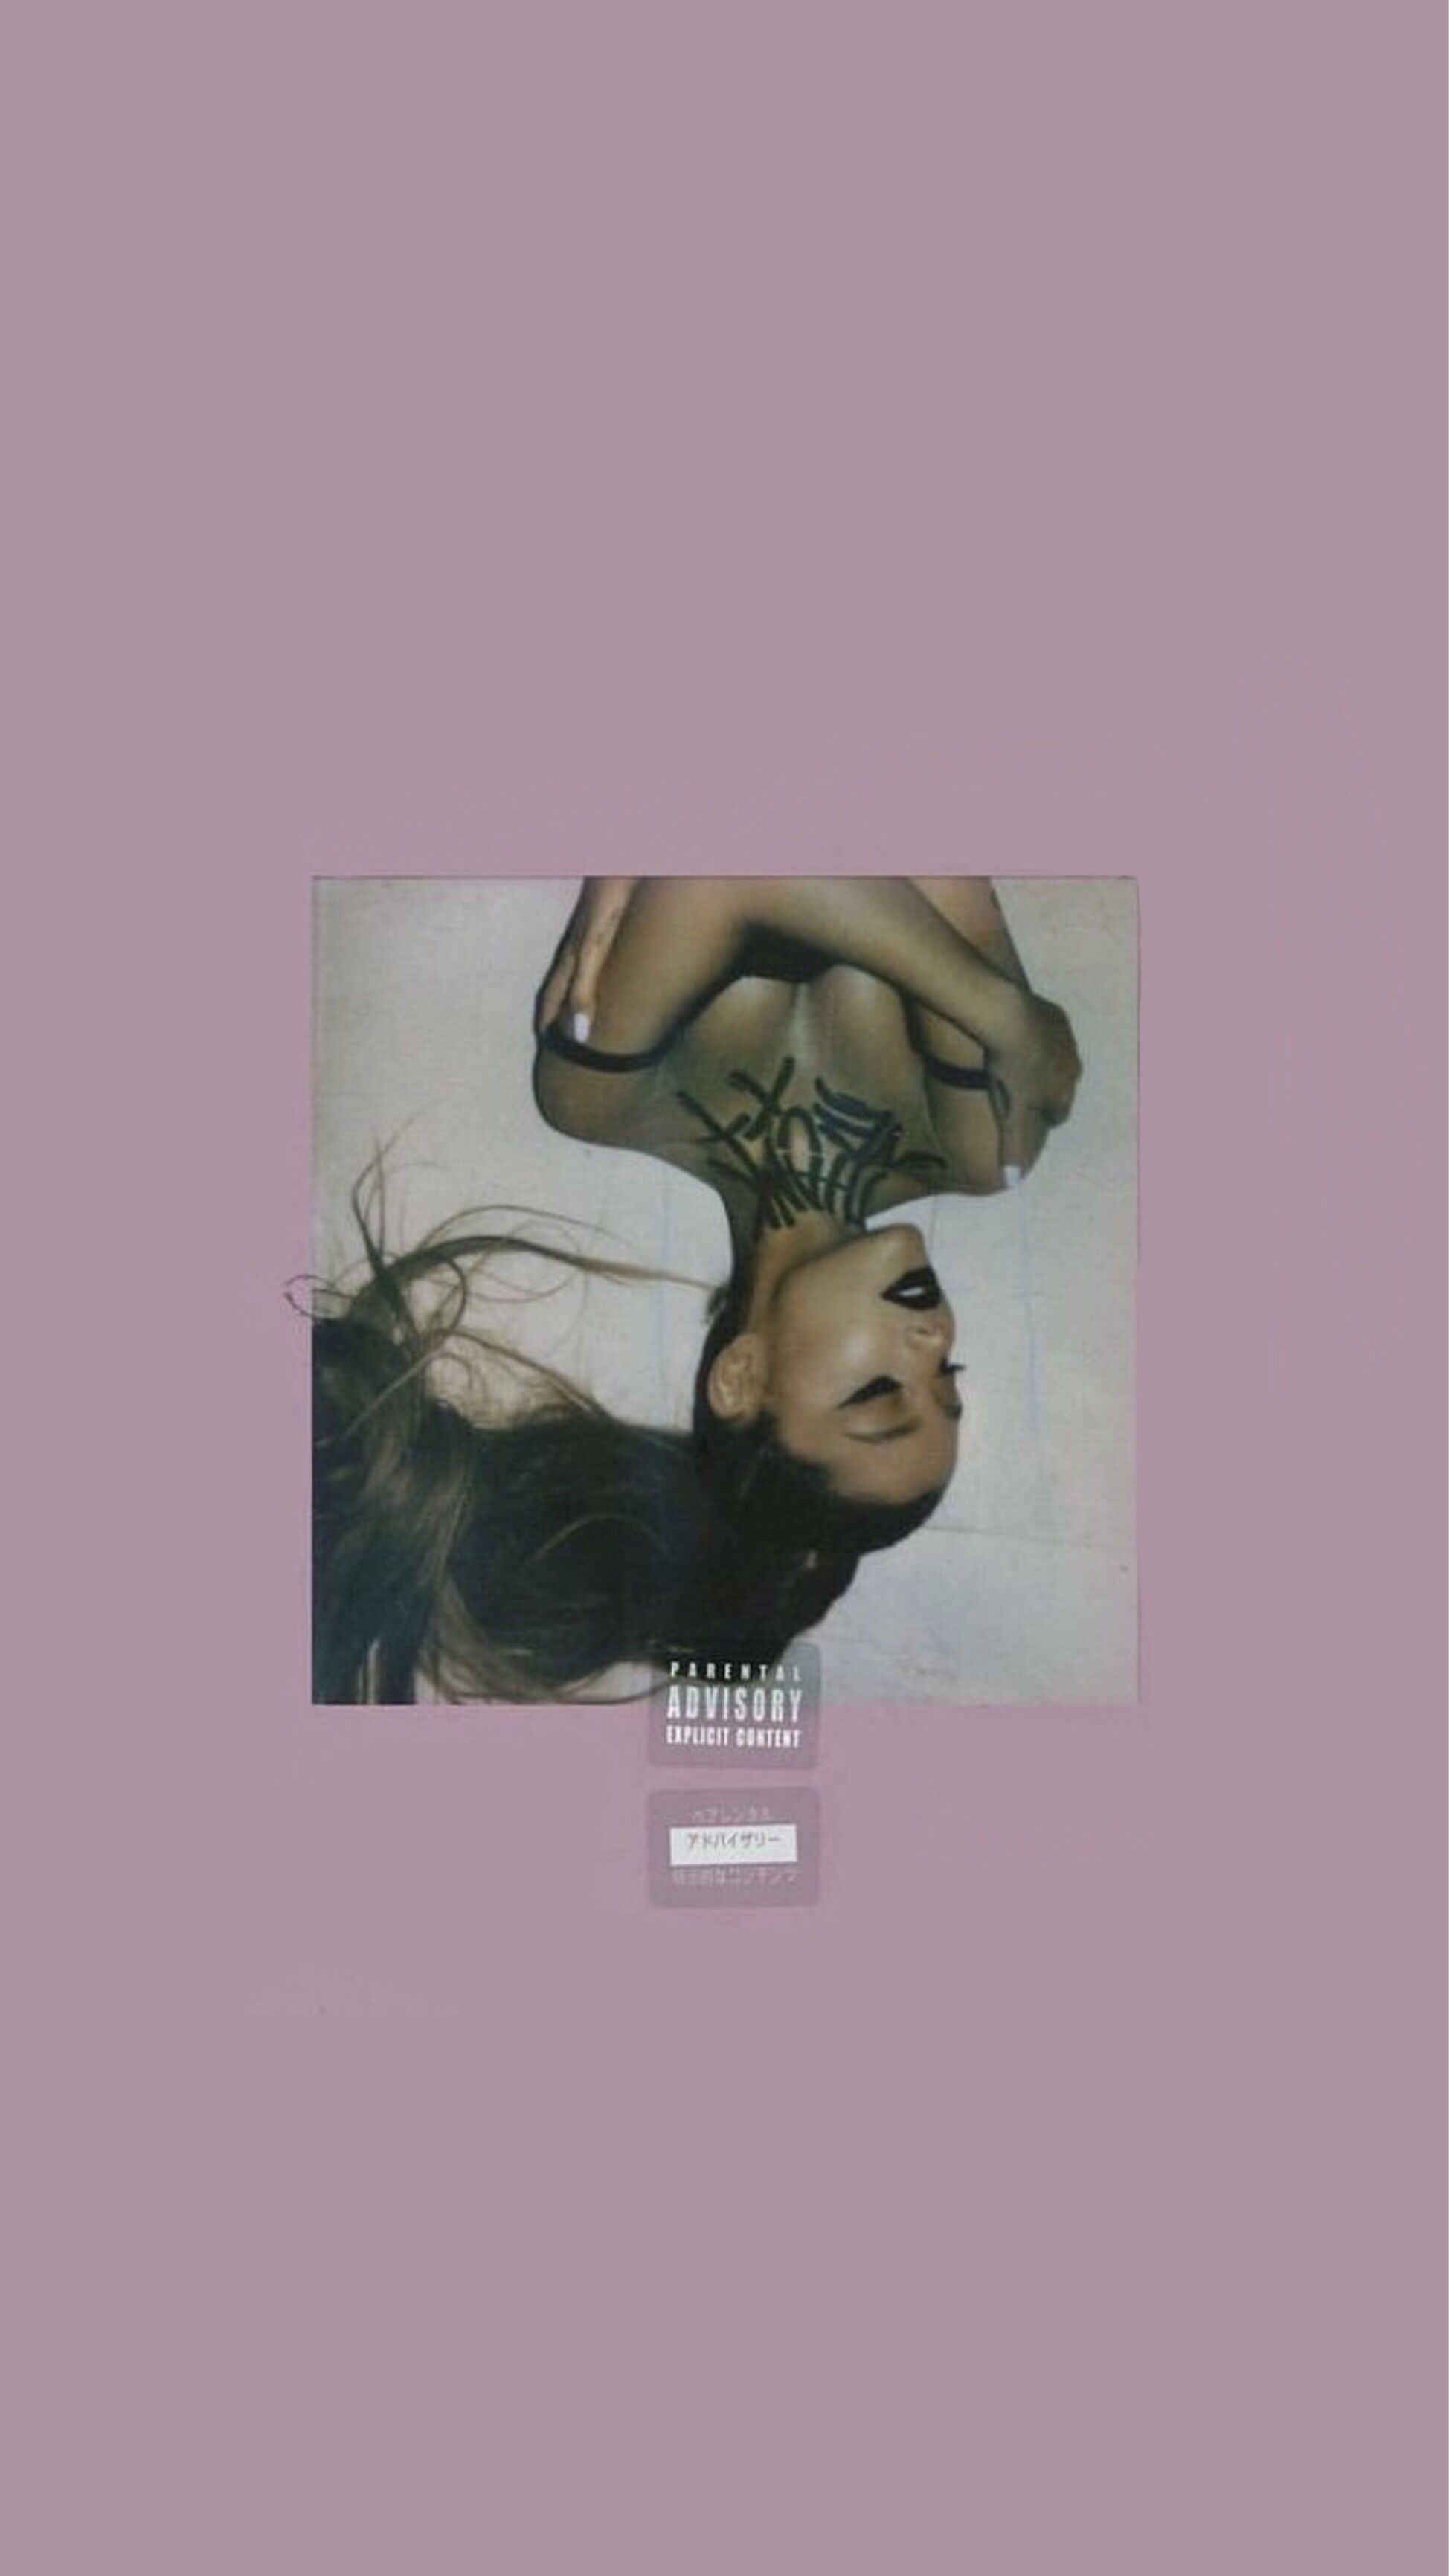 THANK U, NEXT COVER. Ariana grande album, Ariana grande cover, Ariana grande background